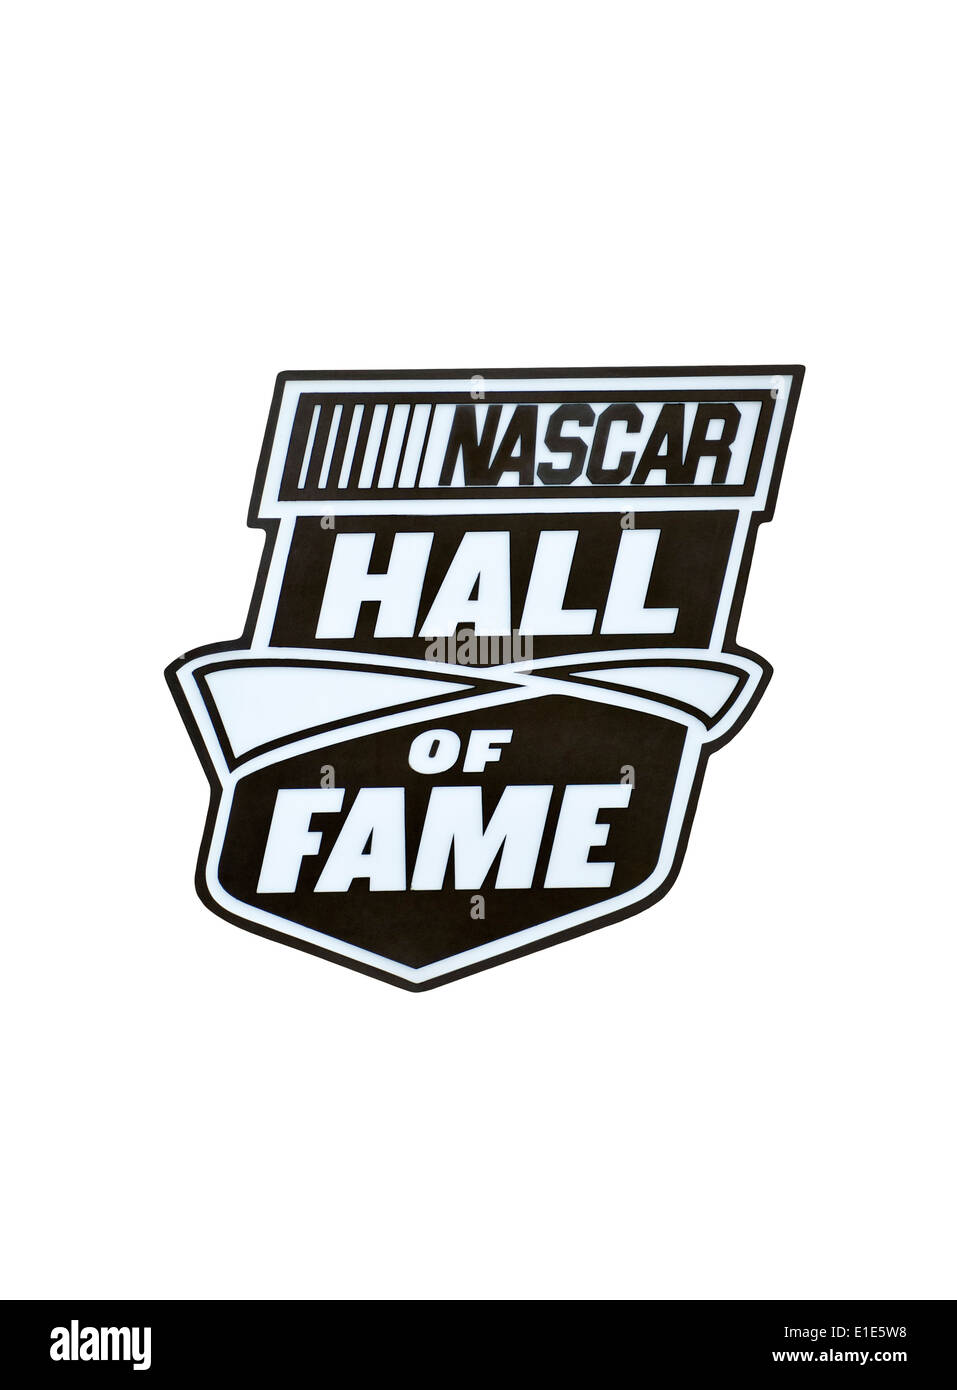 Nascar Hall of Fame, coupure de l'emblème du Nascar Hall of Fame à Charlotte en Caroline du Nord Banque D'Images